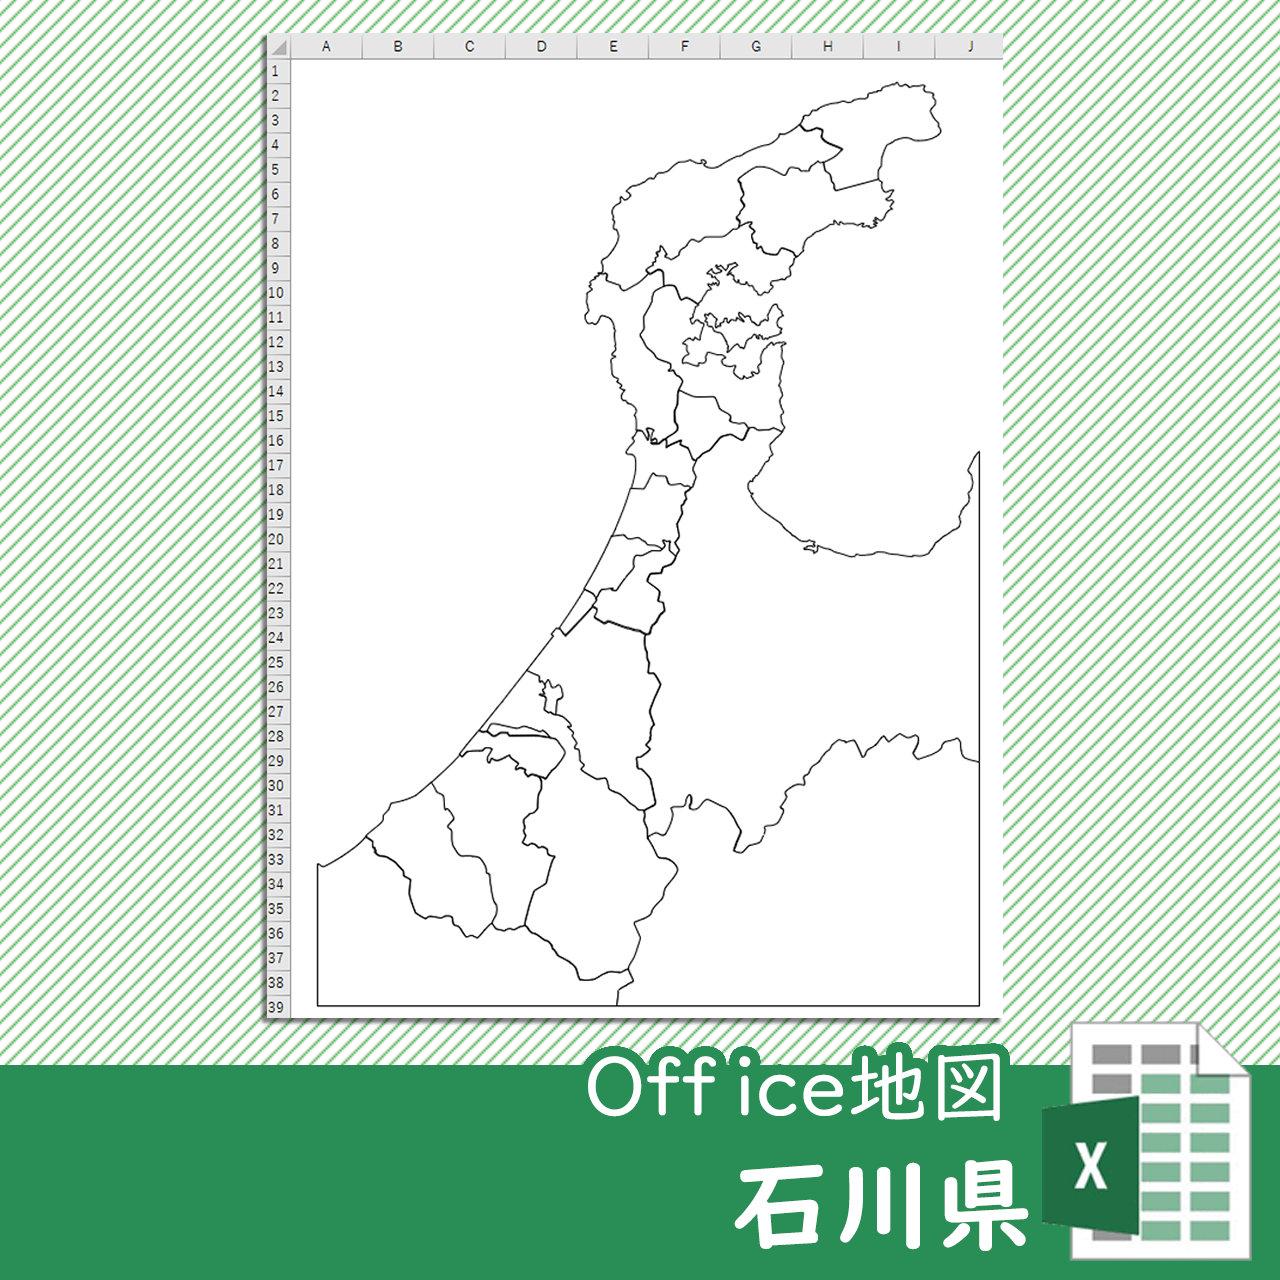 石川県のOffice地図のサムネイル